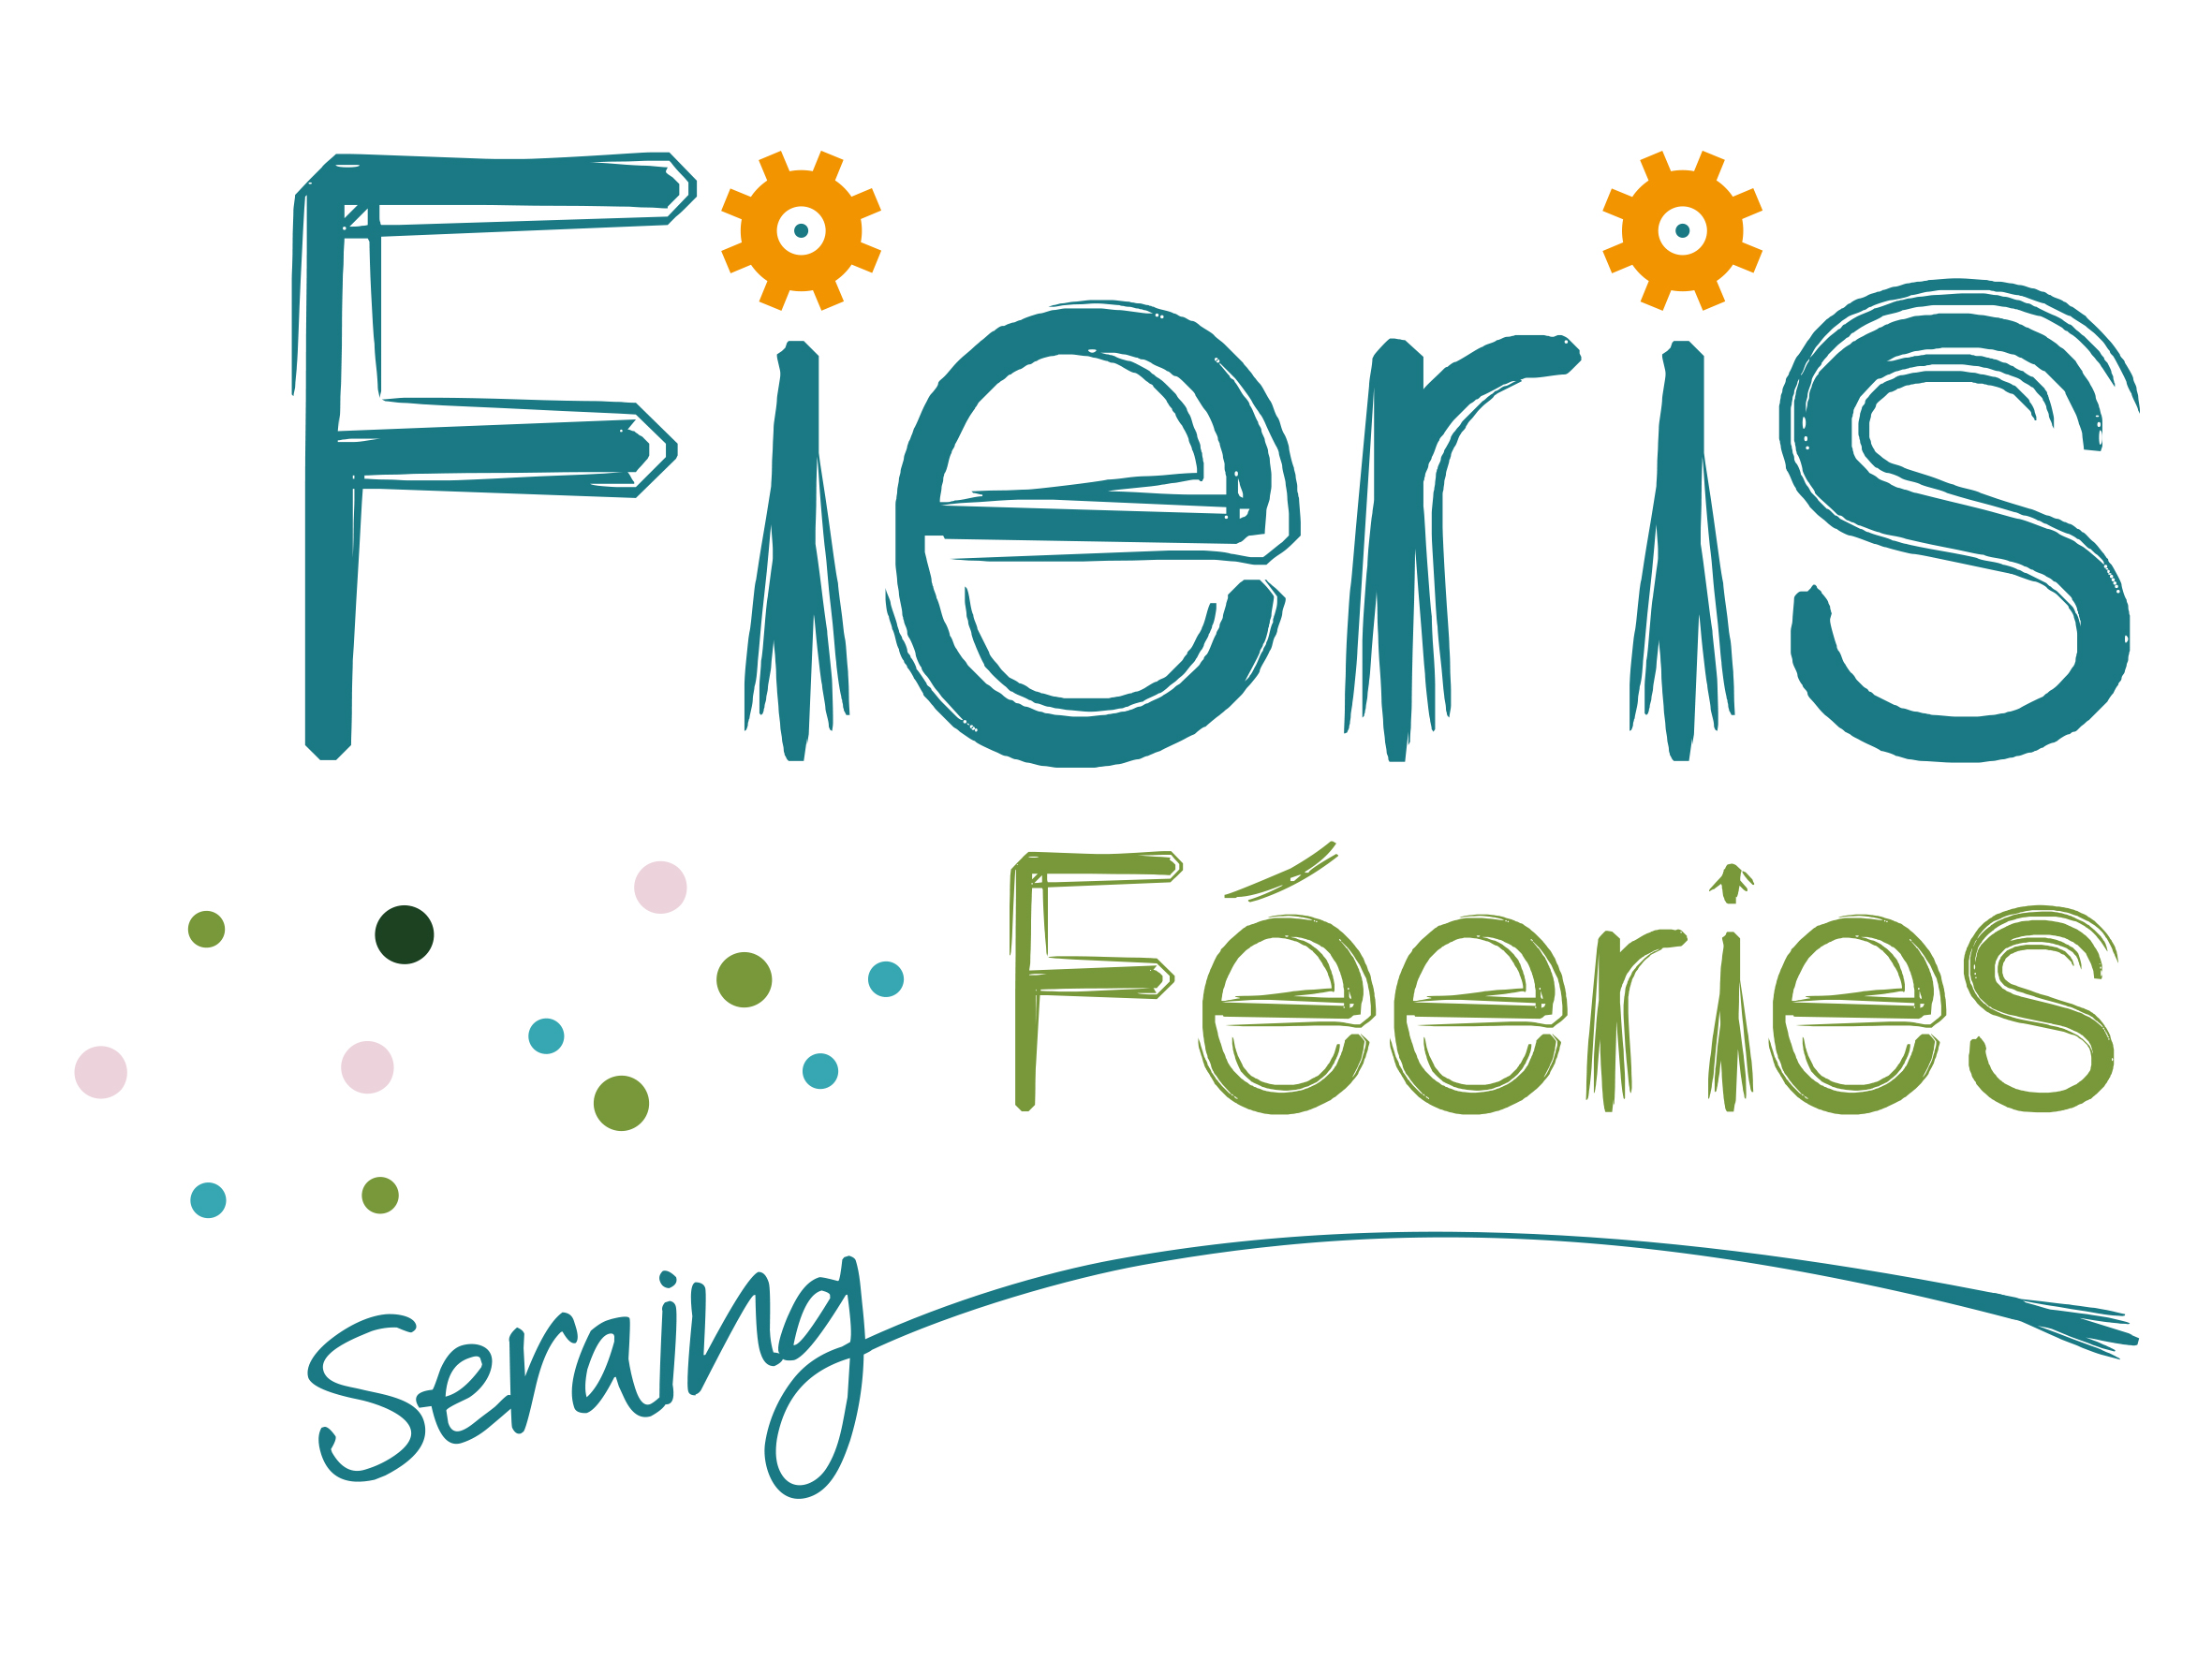 fierisfeeries seraing logo final 2